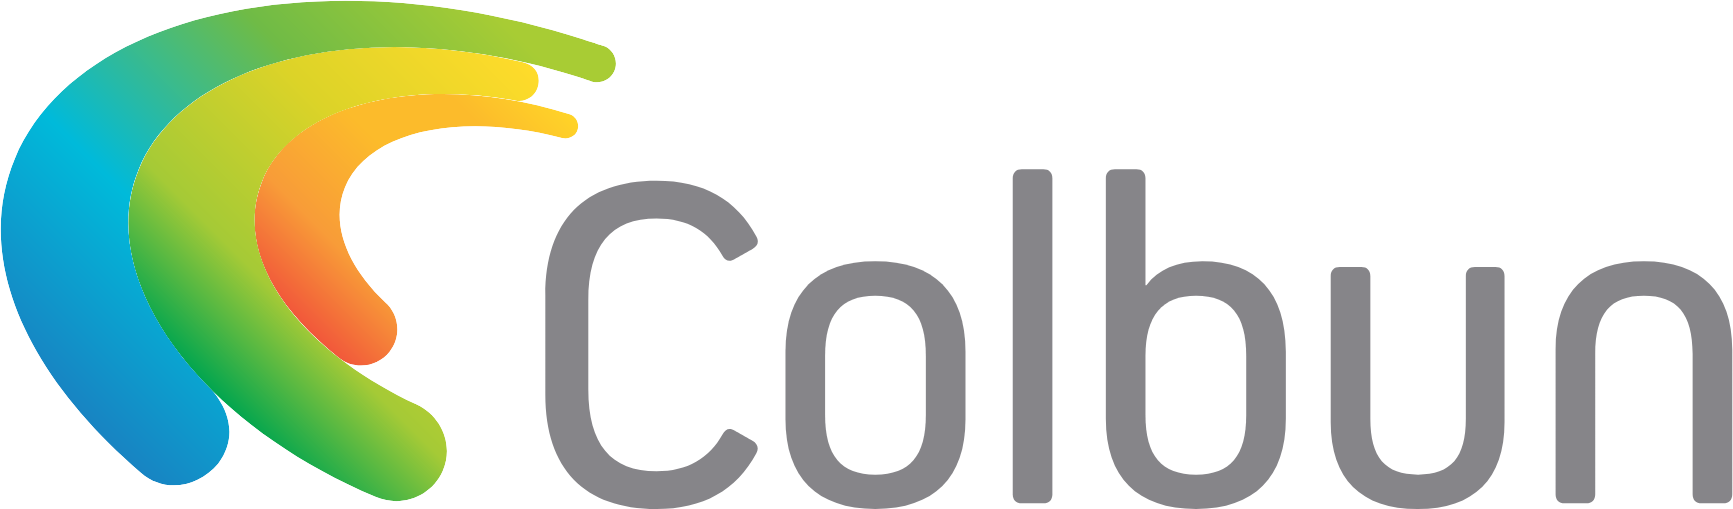 Colbún logo large (transparent PNG)